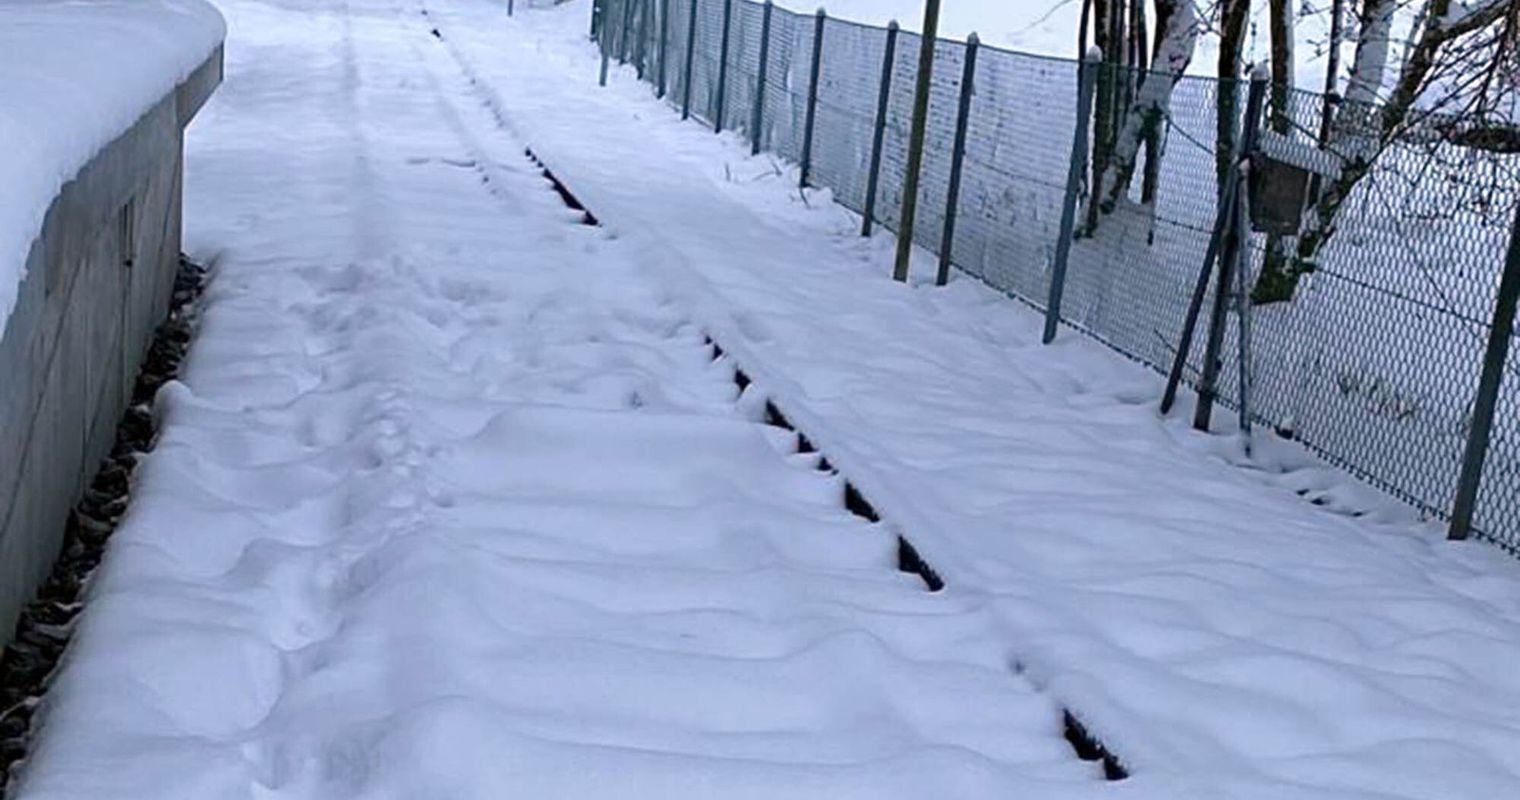 Betrieb der Sonnenbergbahn wegen Schnee eingestellt